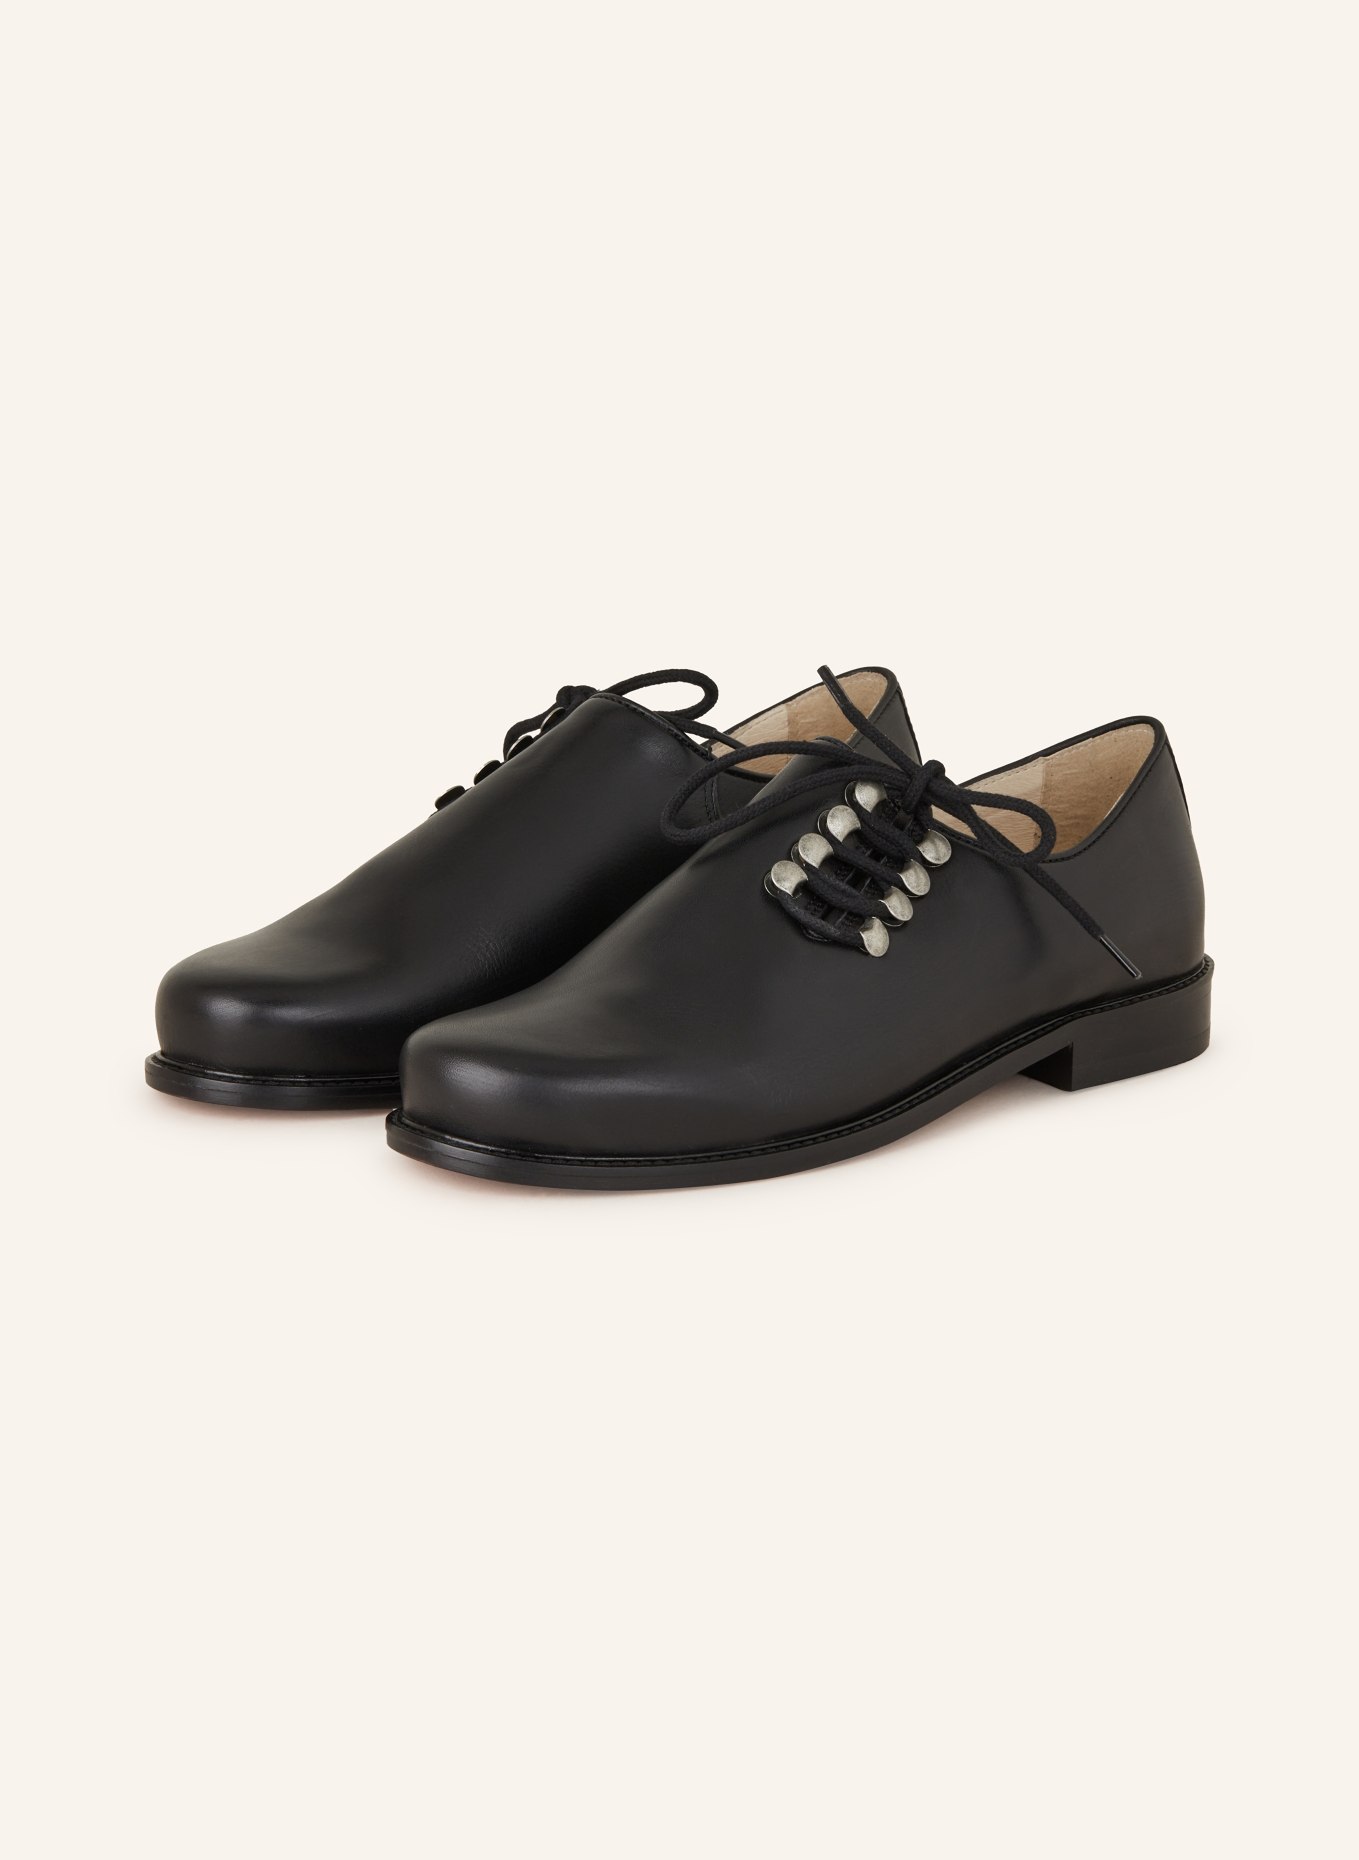 OSTARRICHI Trachten lace-up shoes, Color: BLACK (Image 1)